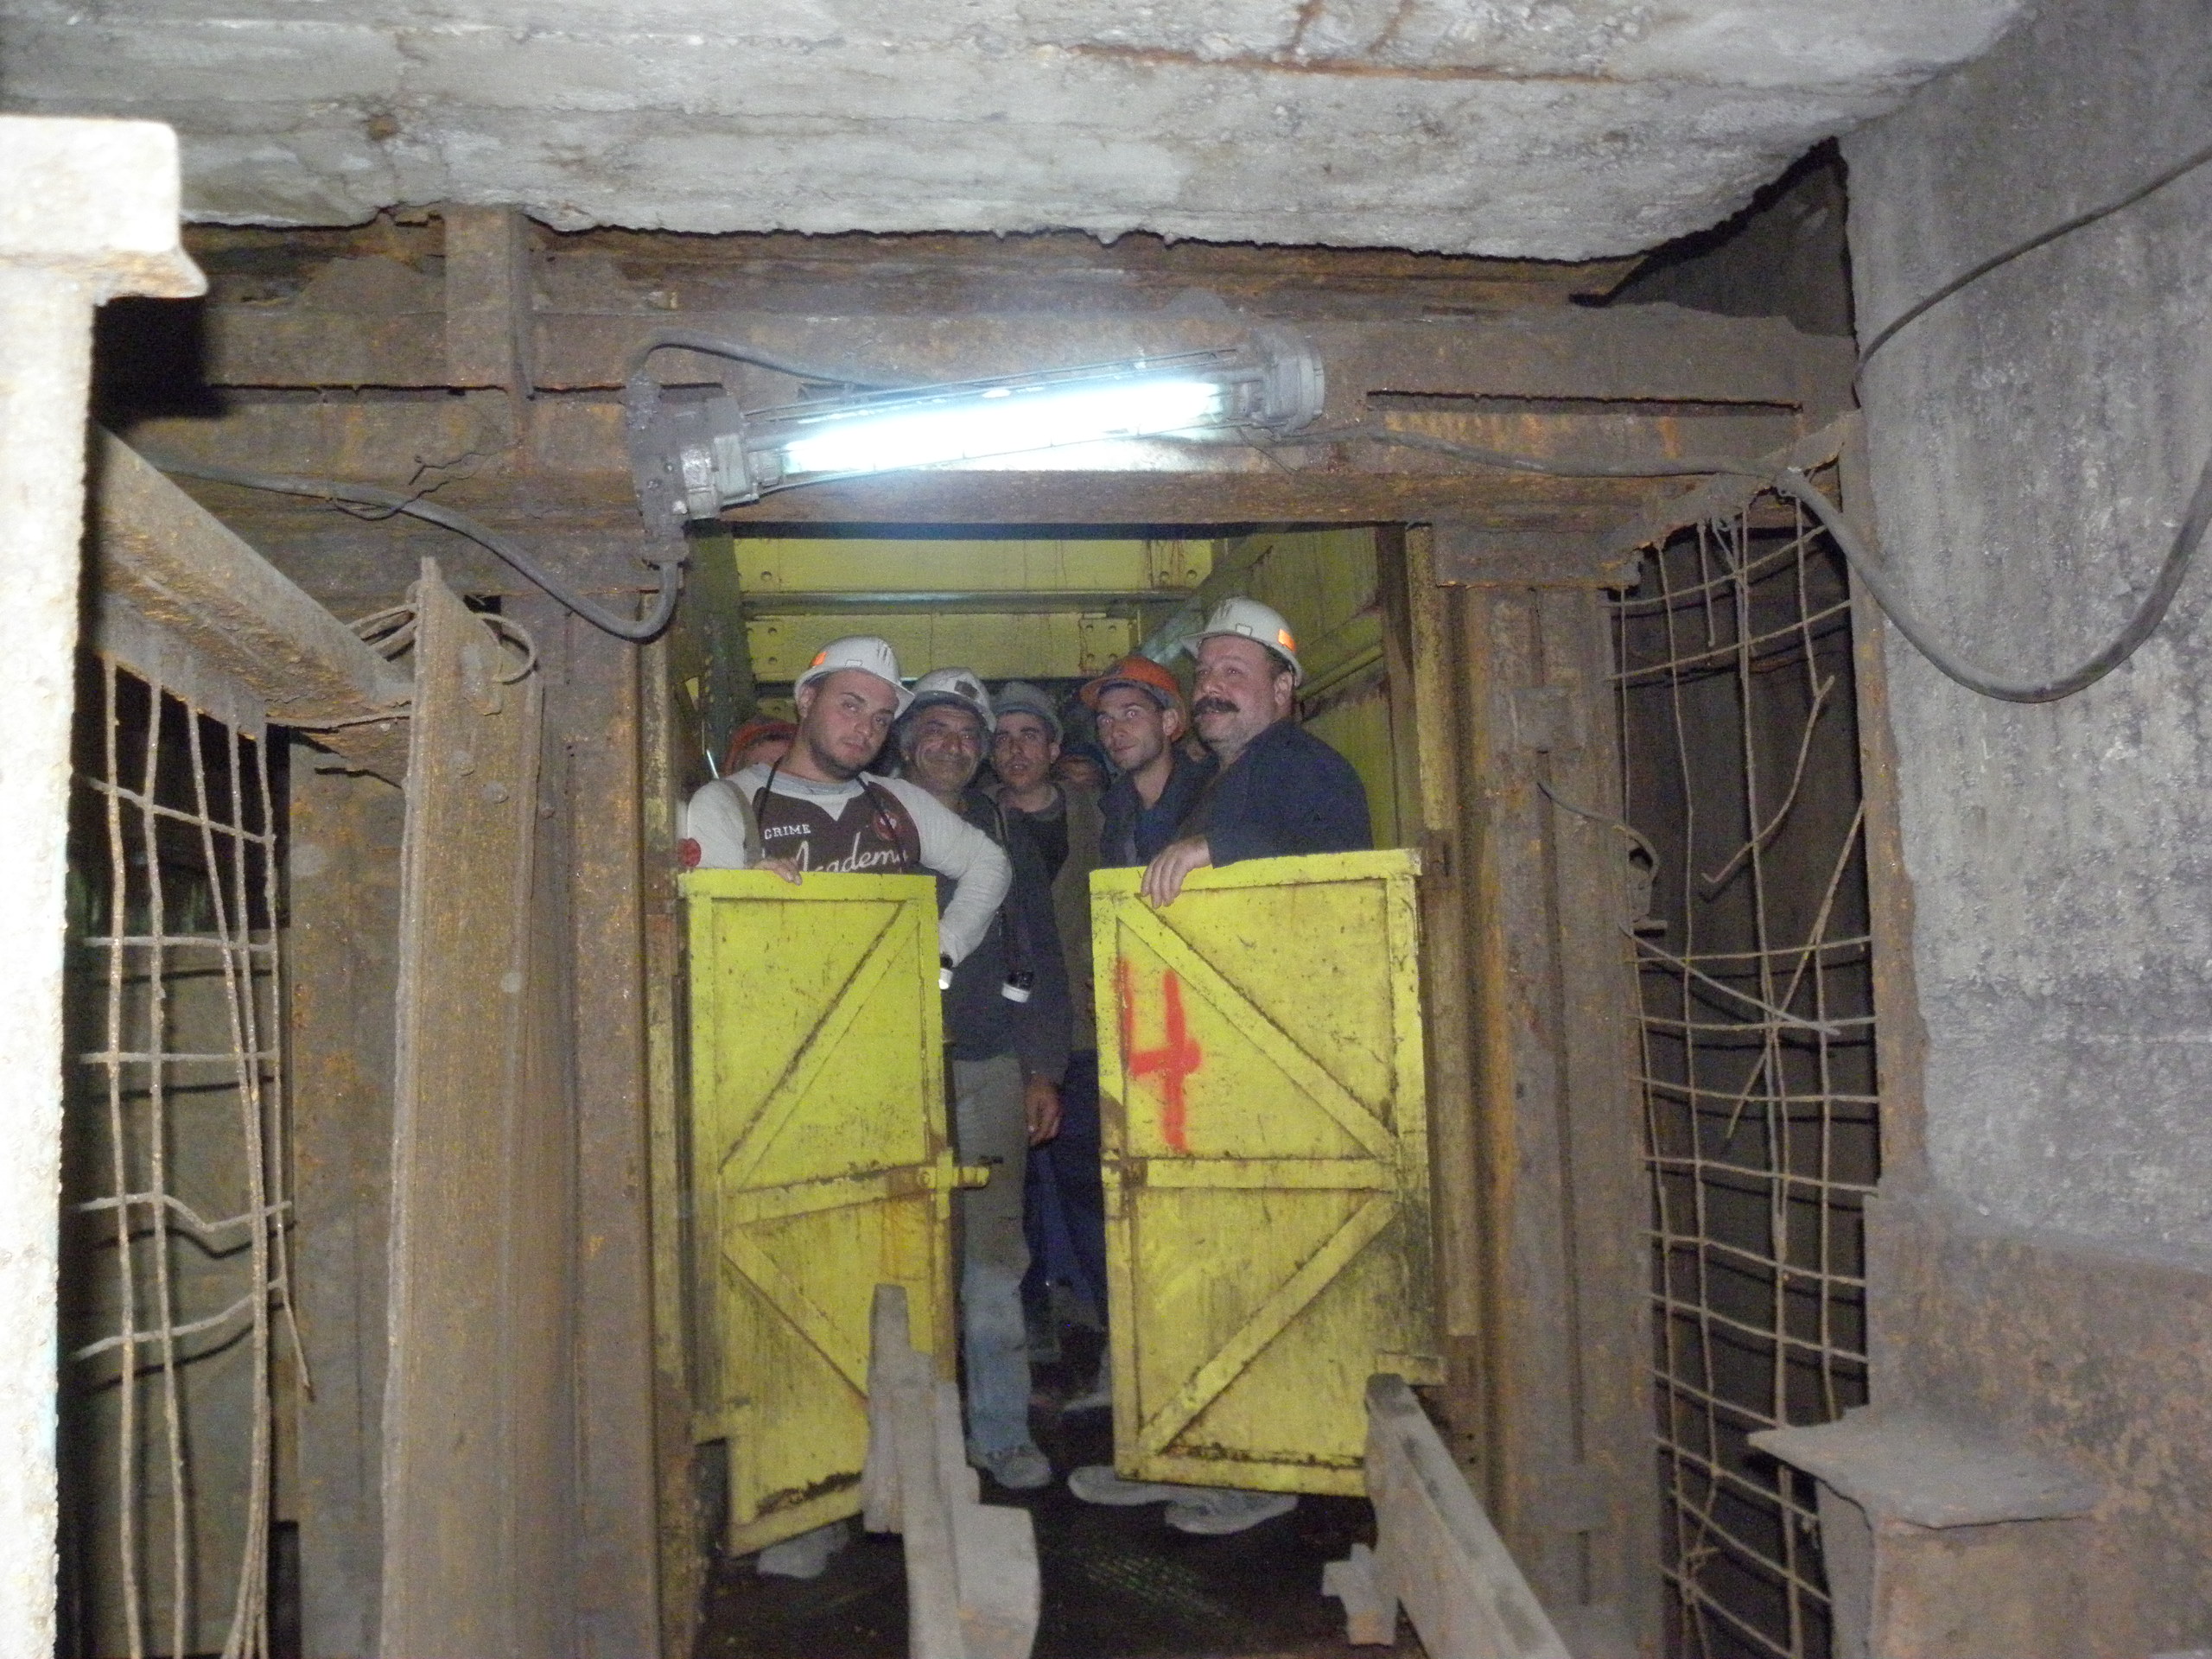 Над 60 часа изкараха близо 140 миньори под земята на рудник "Бабино” тази седмица. Техни колеги ги подкрепяха над земята и щурмуваха ръководството на мините.